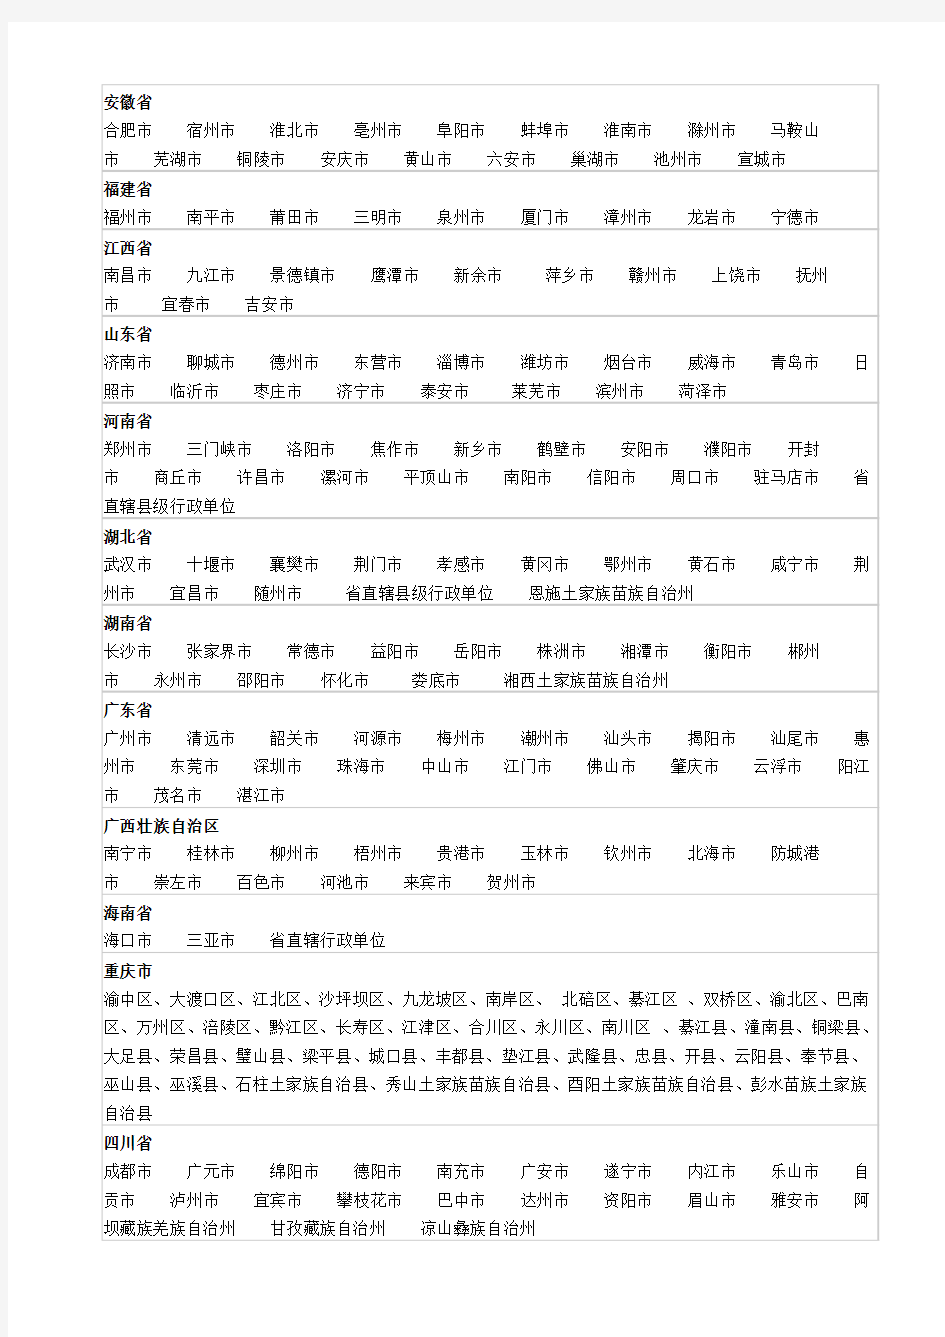 中华人民共和国行政区划统计表